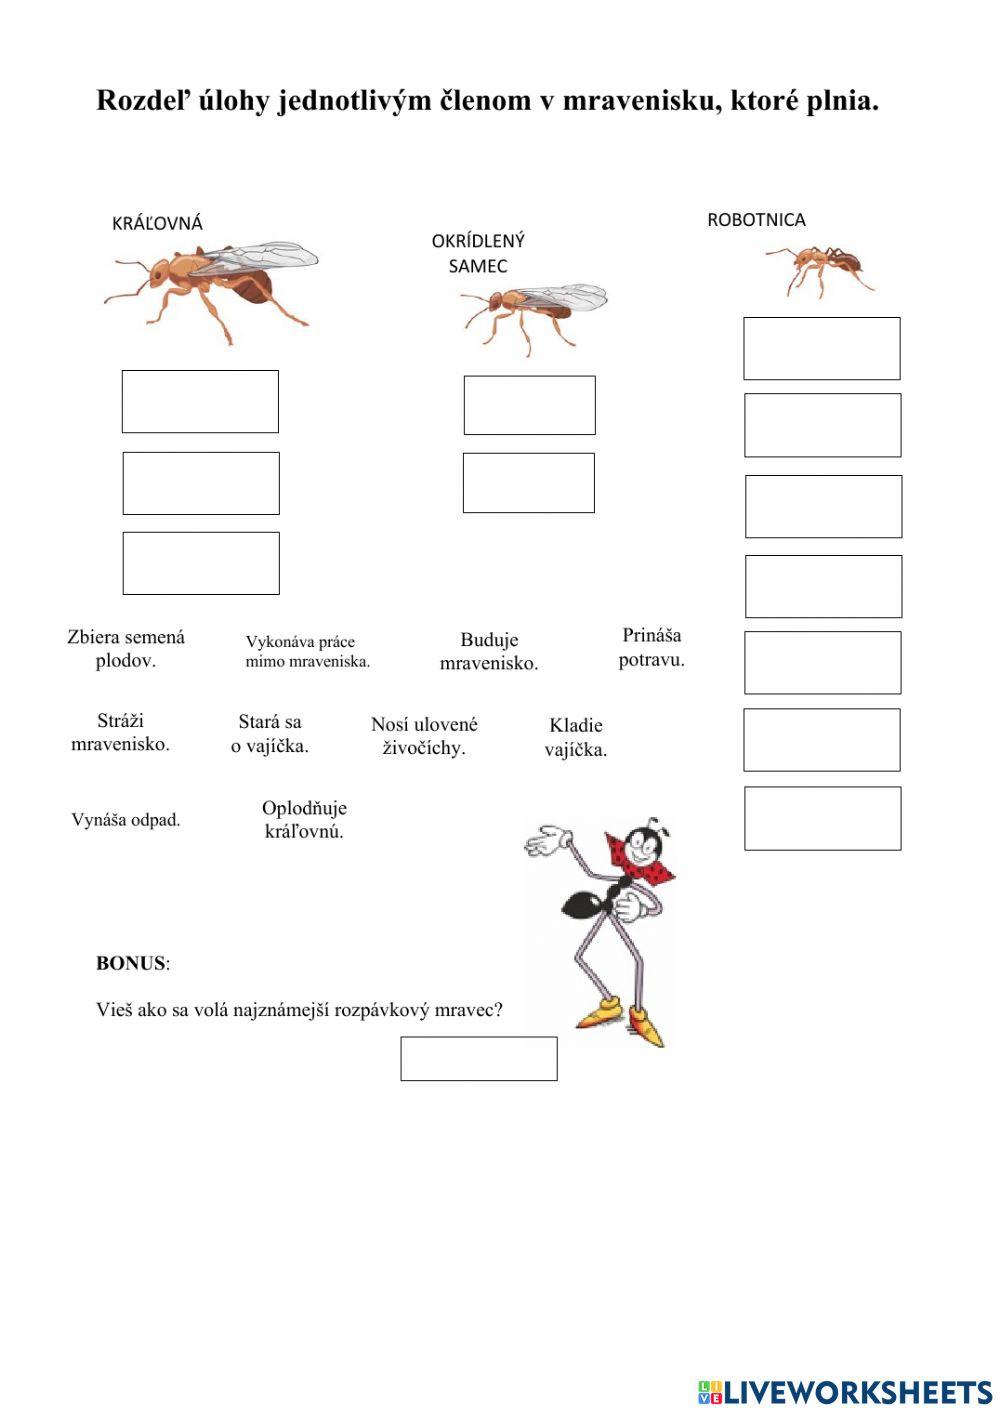 Rozdeľ úlohy jednotlivým členom v mravenisku